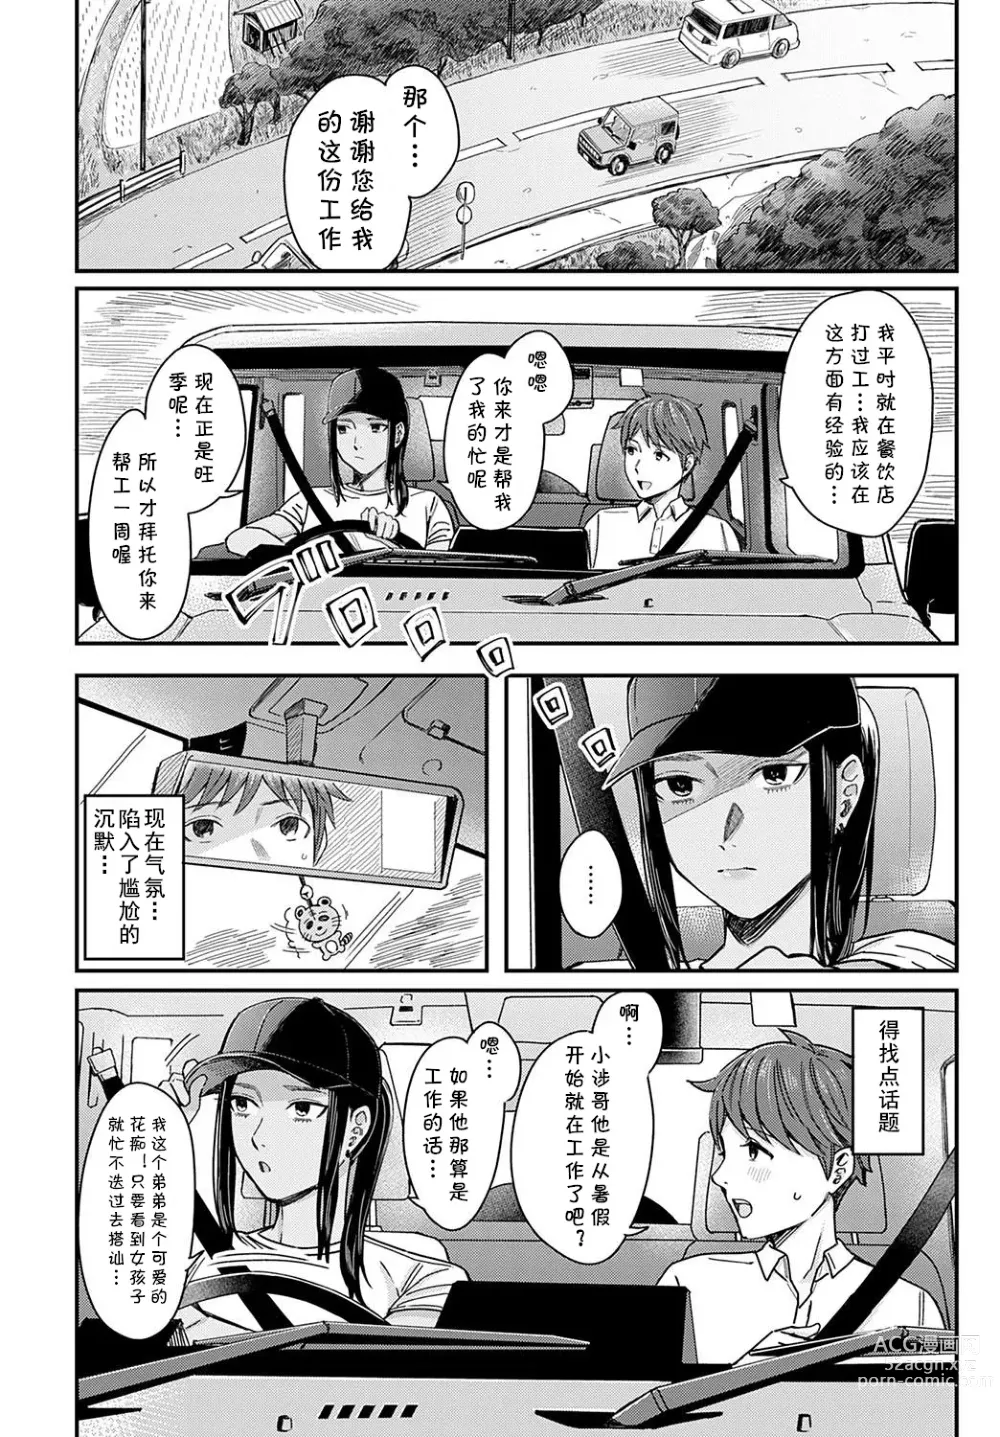 Page 2 of manga Shiosai